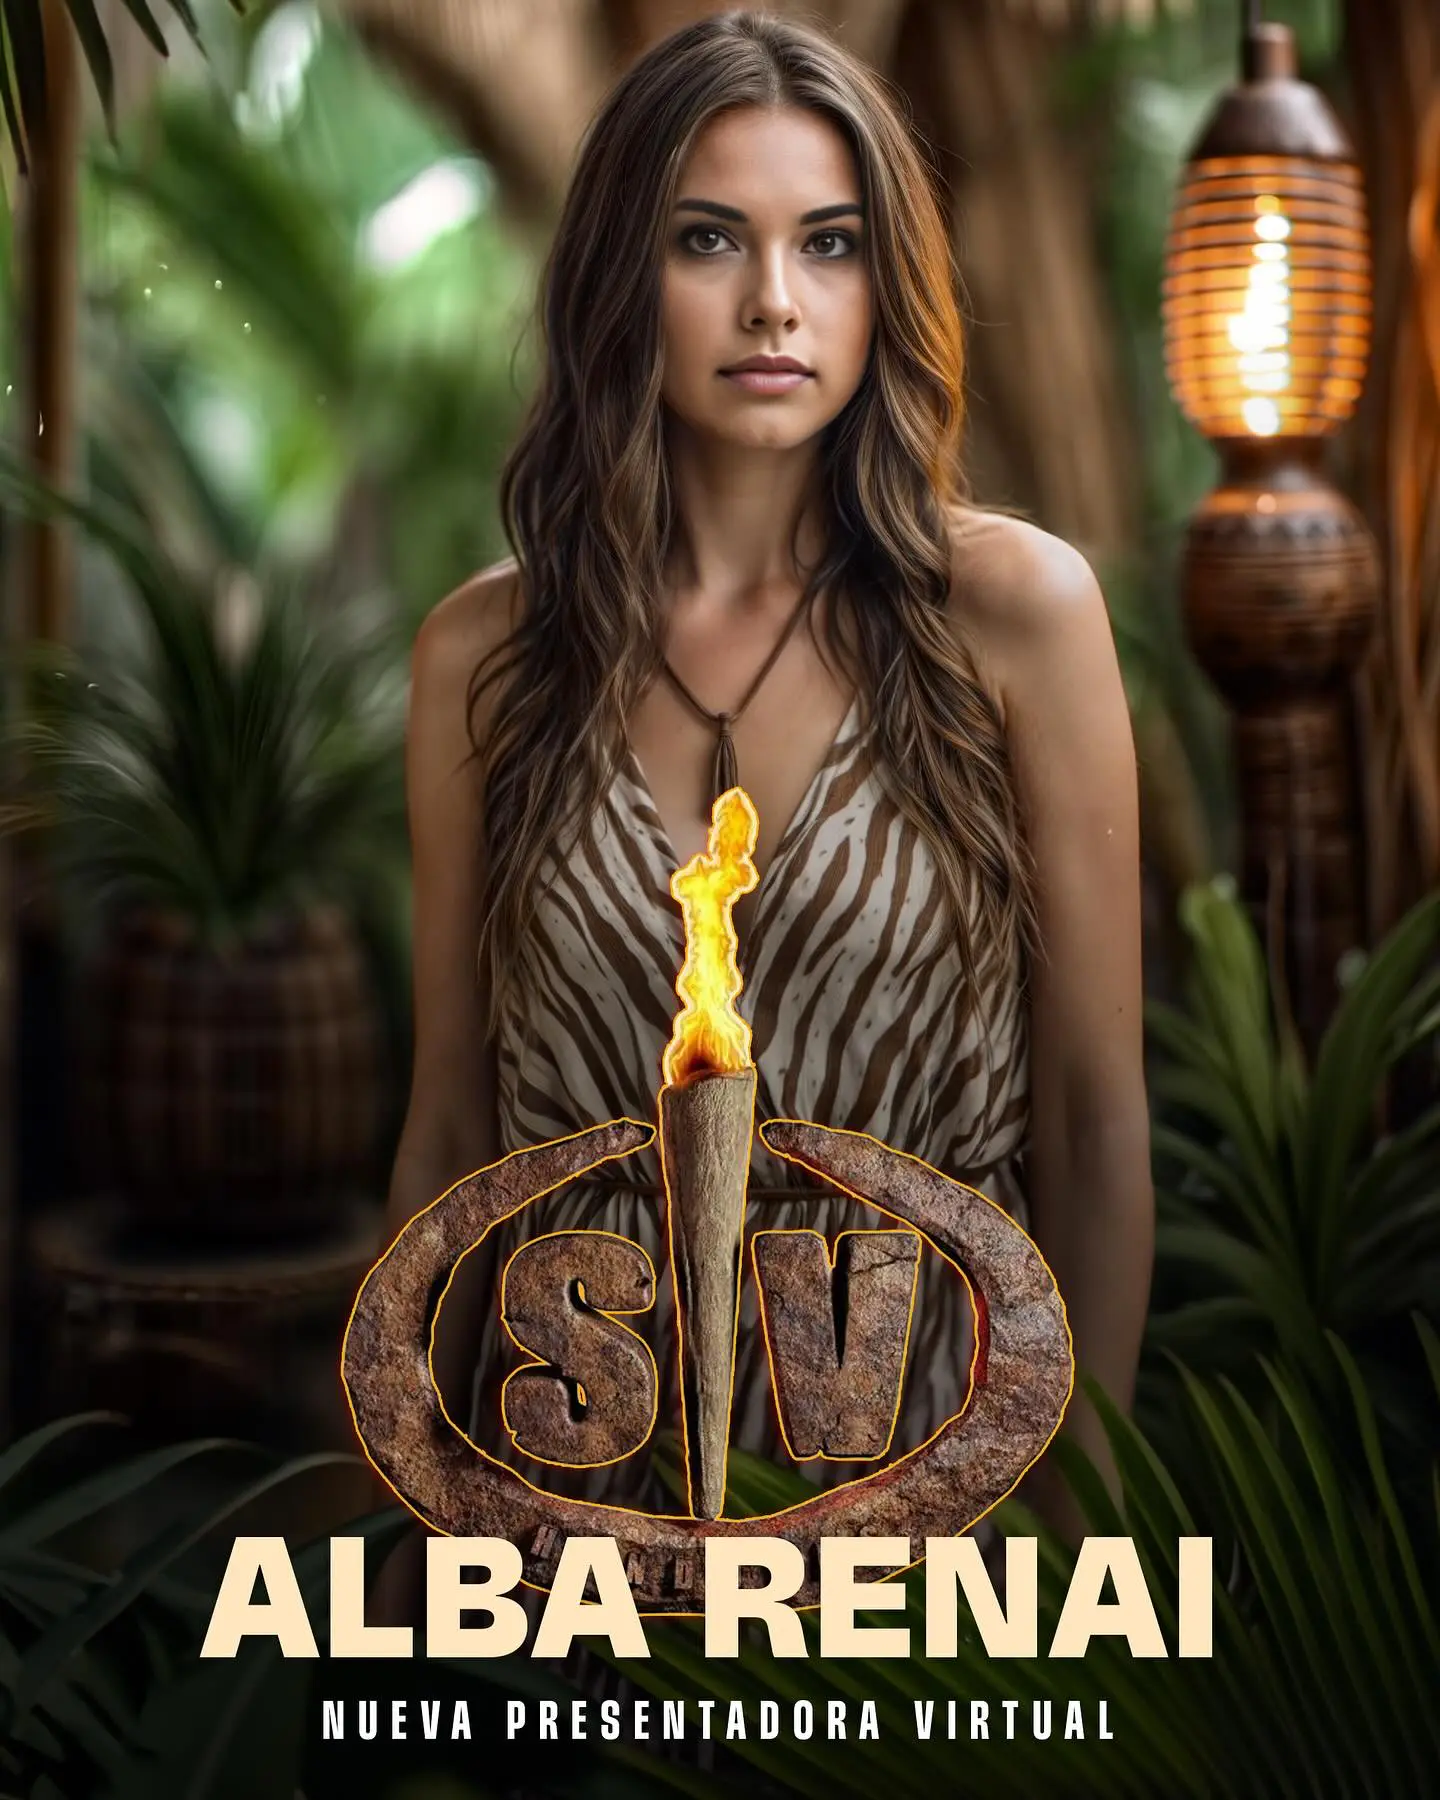 Alba Renai, influencer virtual, nueva presentadora 'Supervivientes'.